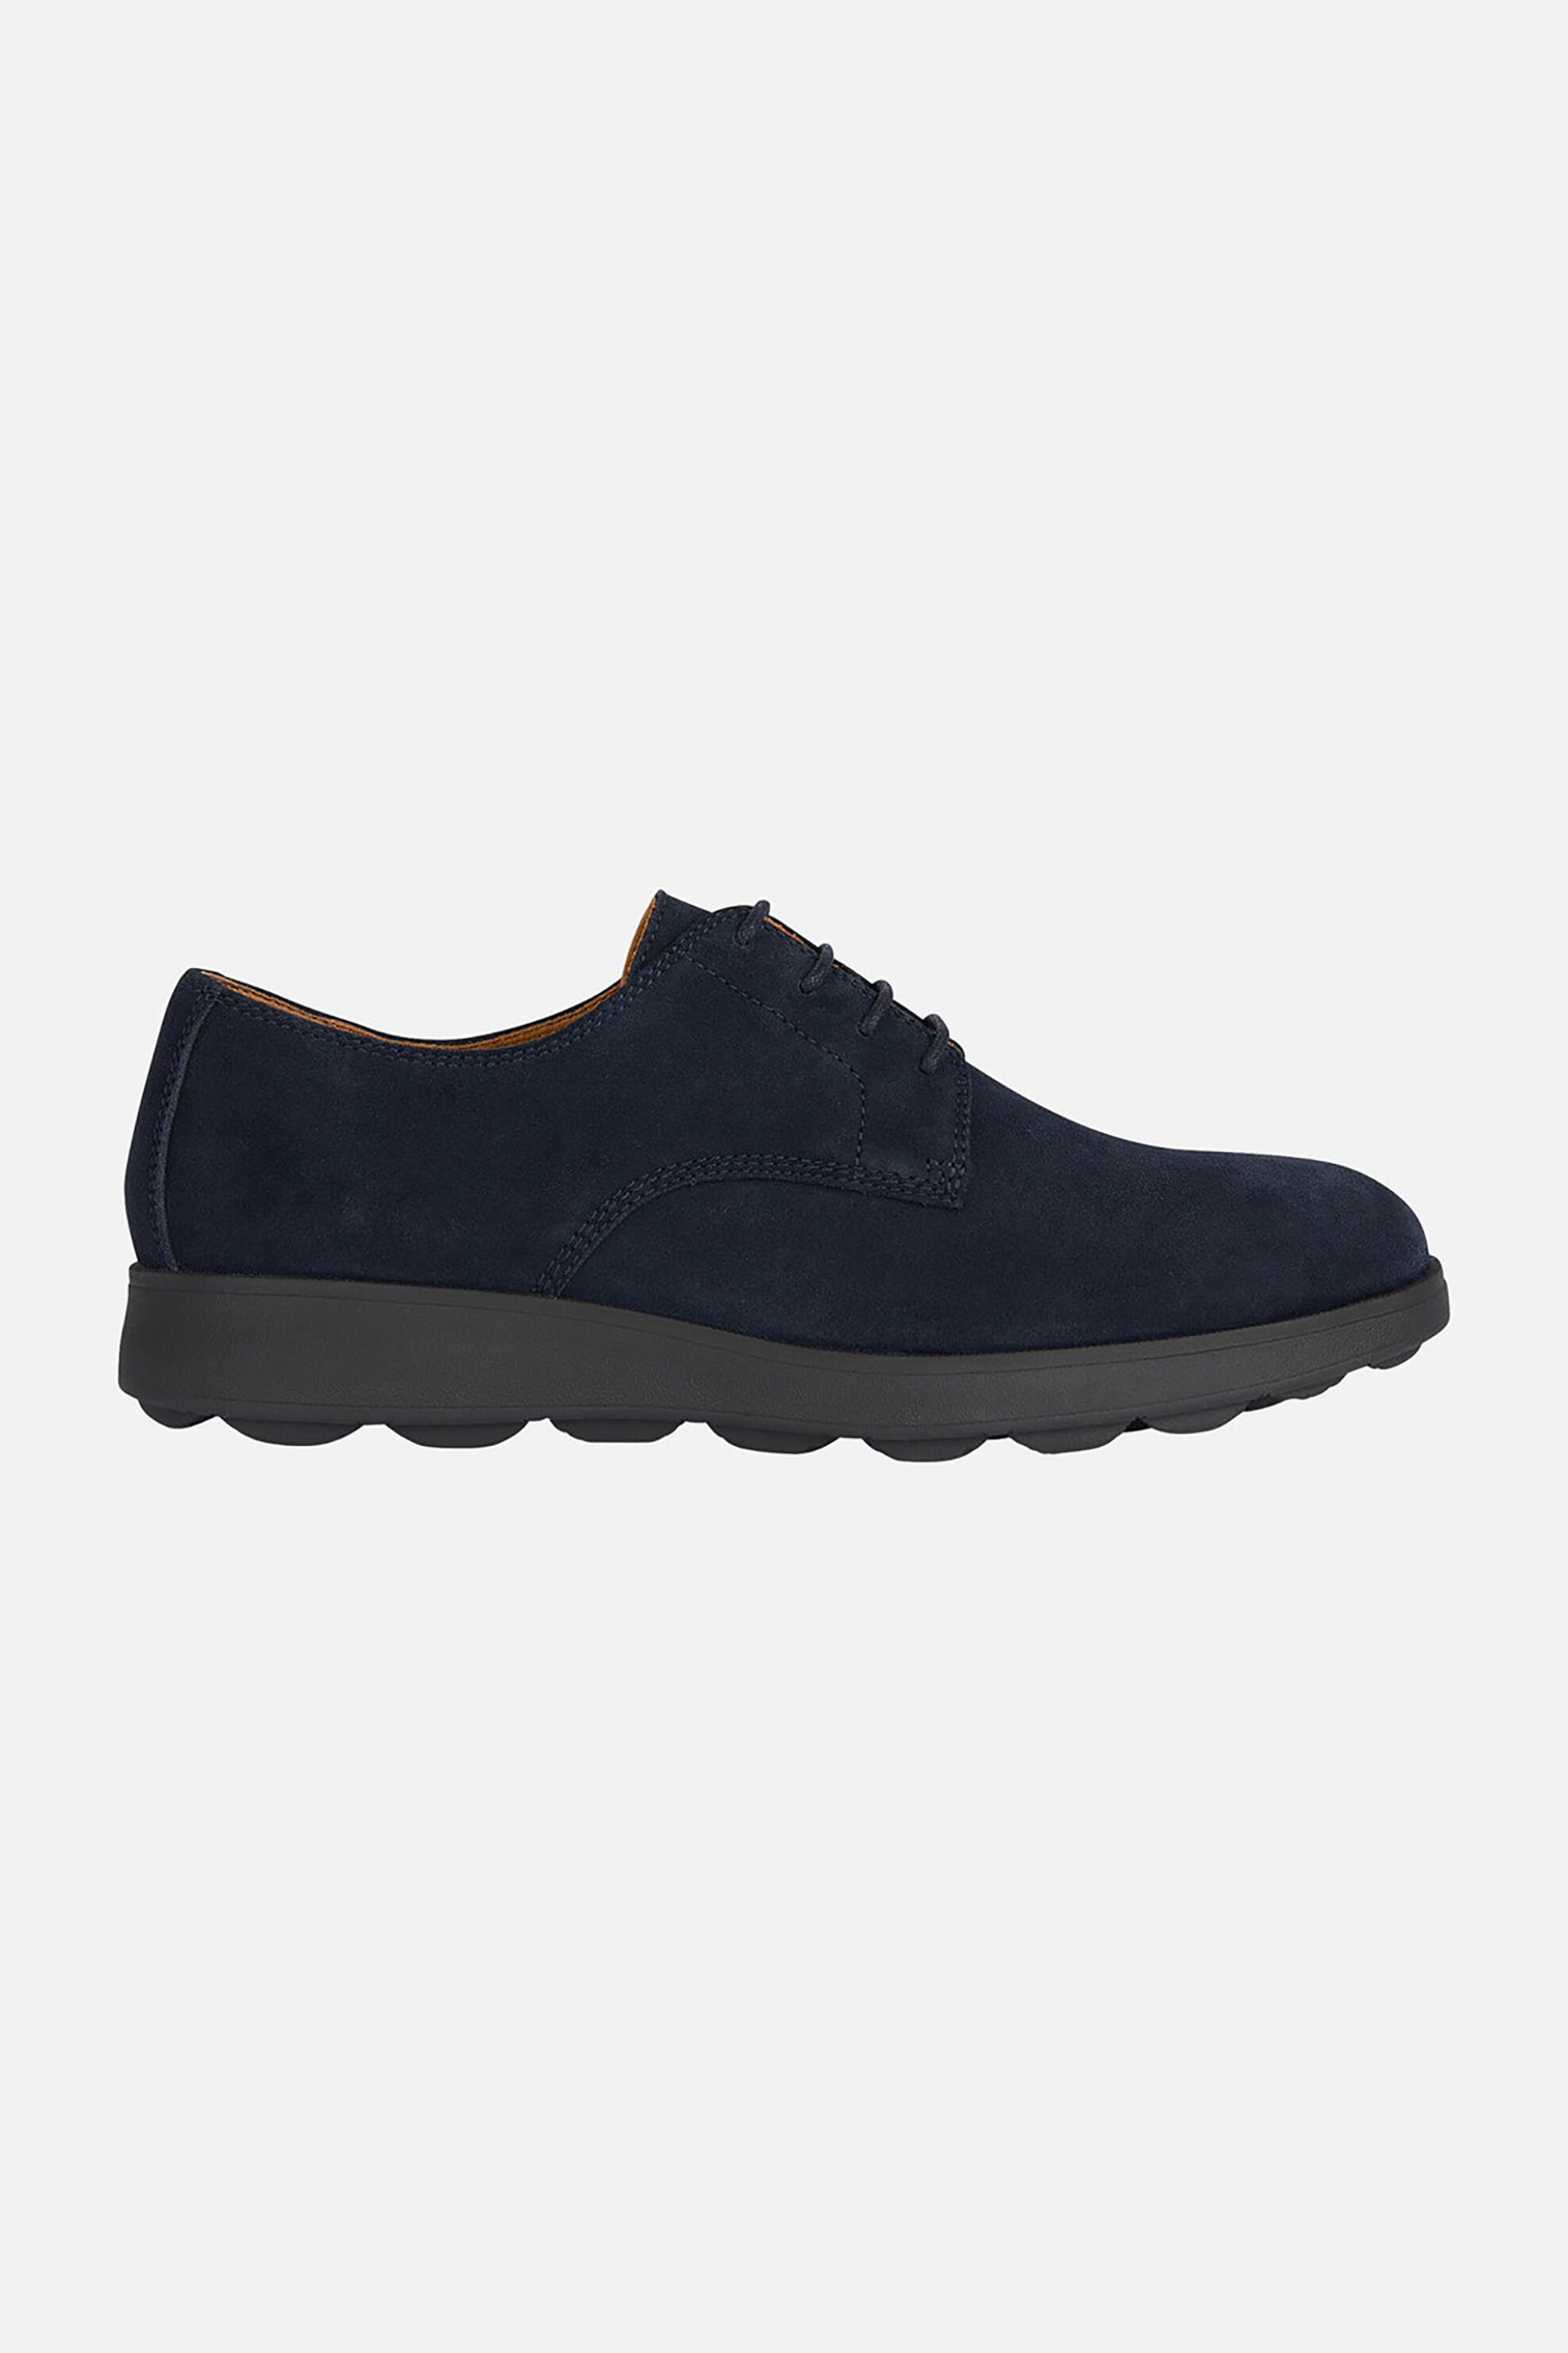 Ανδρική Μόδα > Ανδρικά Παπούτσια > Ανδρικά Σκαρπίνια & Παπούτσια Oxford Geox ανδρικά suede παπούτσια oxford "Spherica Ec10" - U45GHA00022C4002 Μπλε Σκούρο